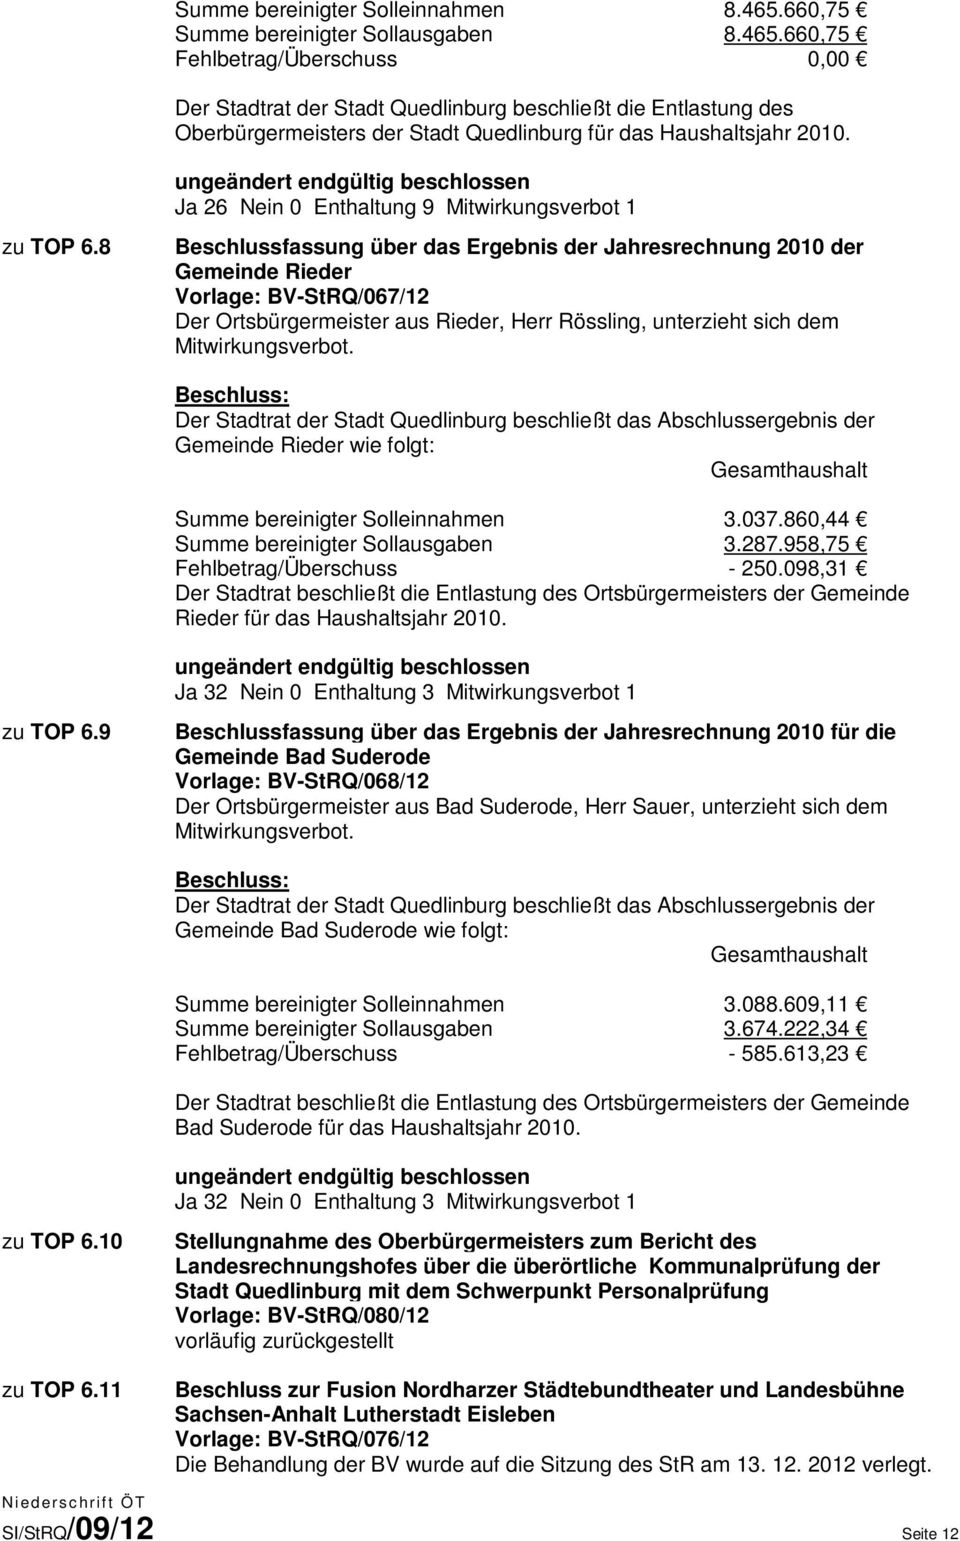 660,75 Fehlbetrag/Überschuss 0,00 Der Stadtrat der Stadt Quedlinburg beschließt die Entlastung des Oberbürgermeisters der Stadt Quedlinburg für das Haushaltsjahr 2010.